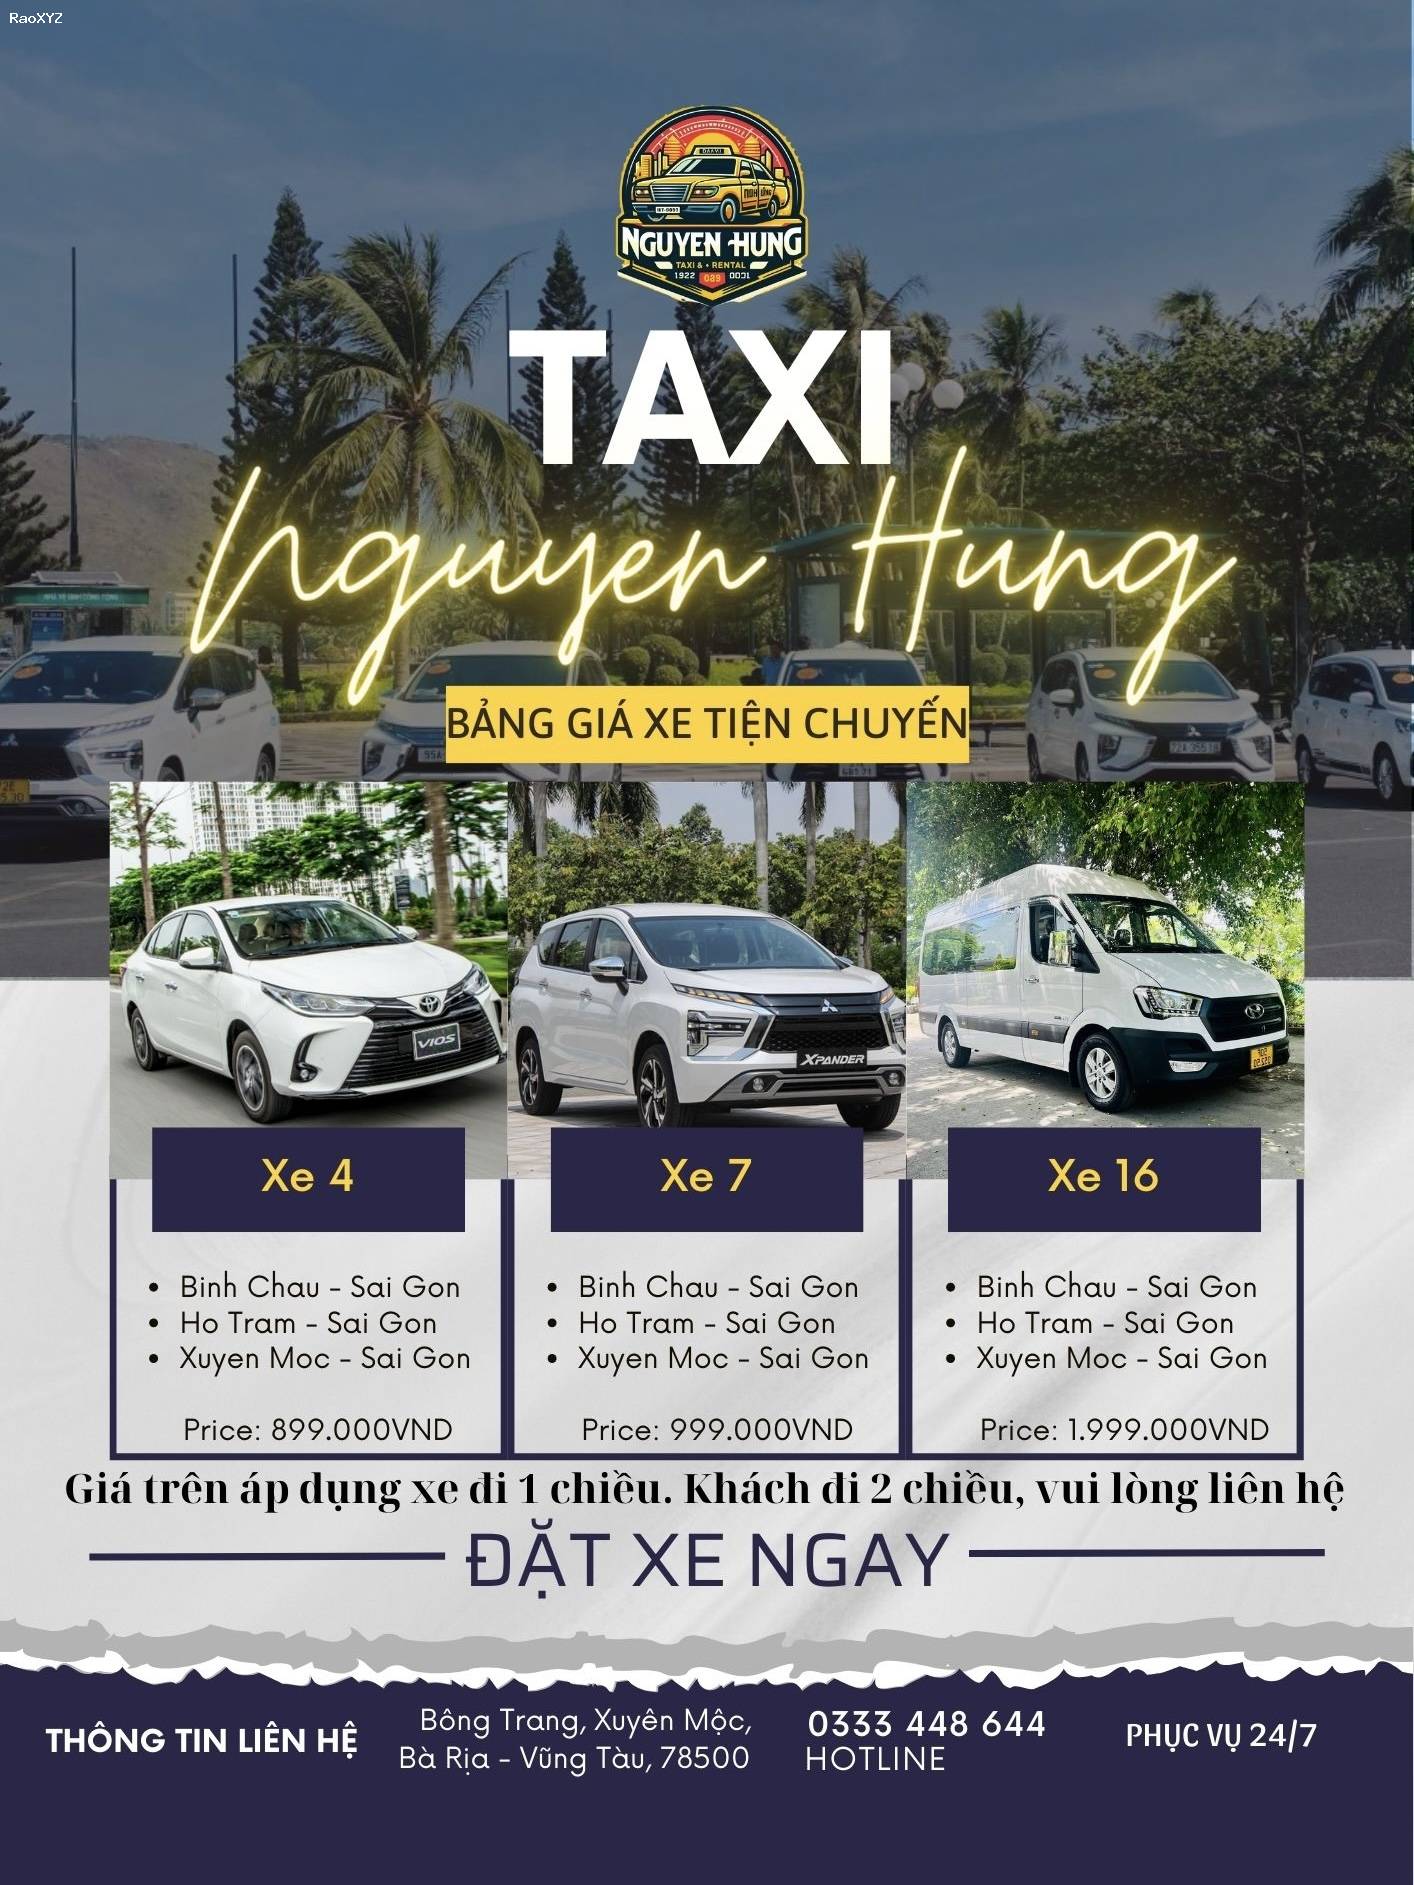 Taxi Nguyễn Hưng - Tổng đài taxi, xe tiện chuyến uy tín #1 Xuyên Mộc